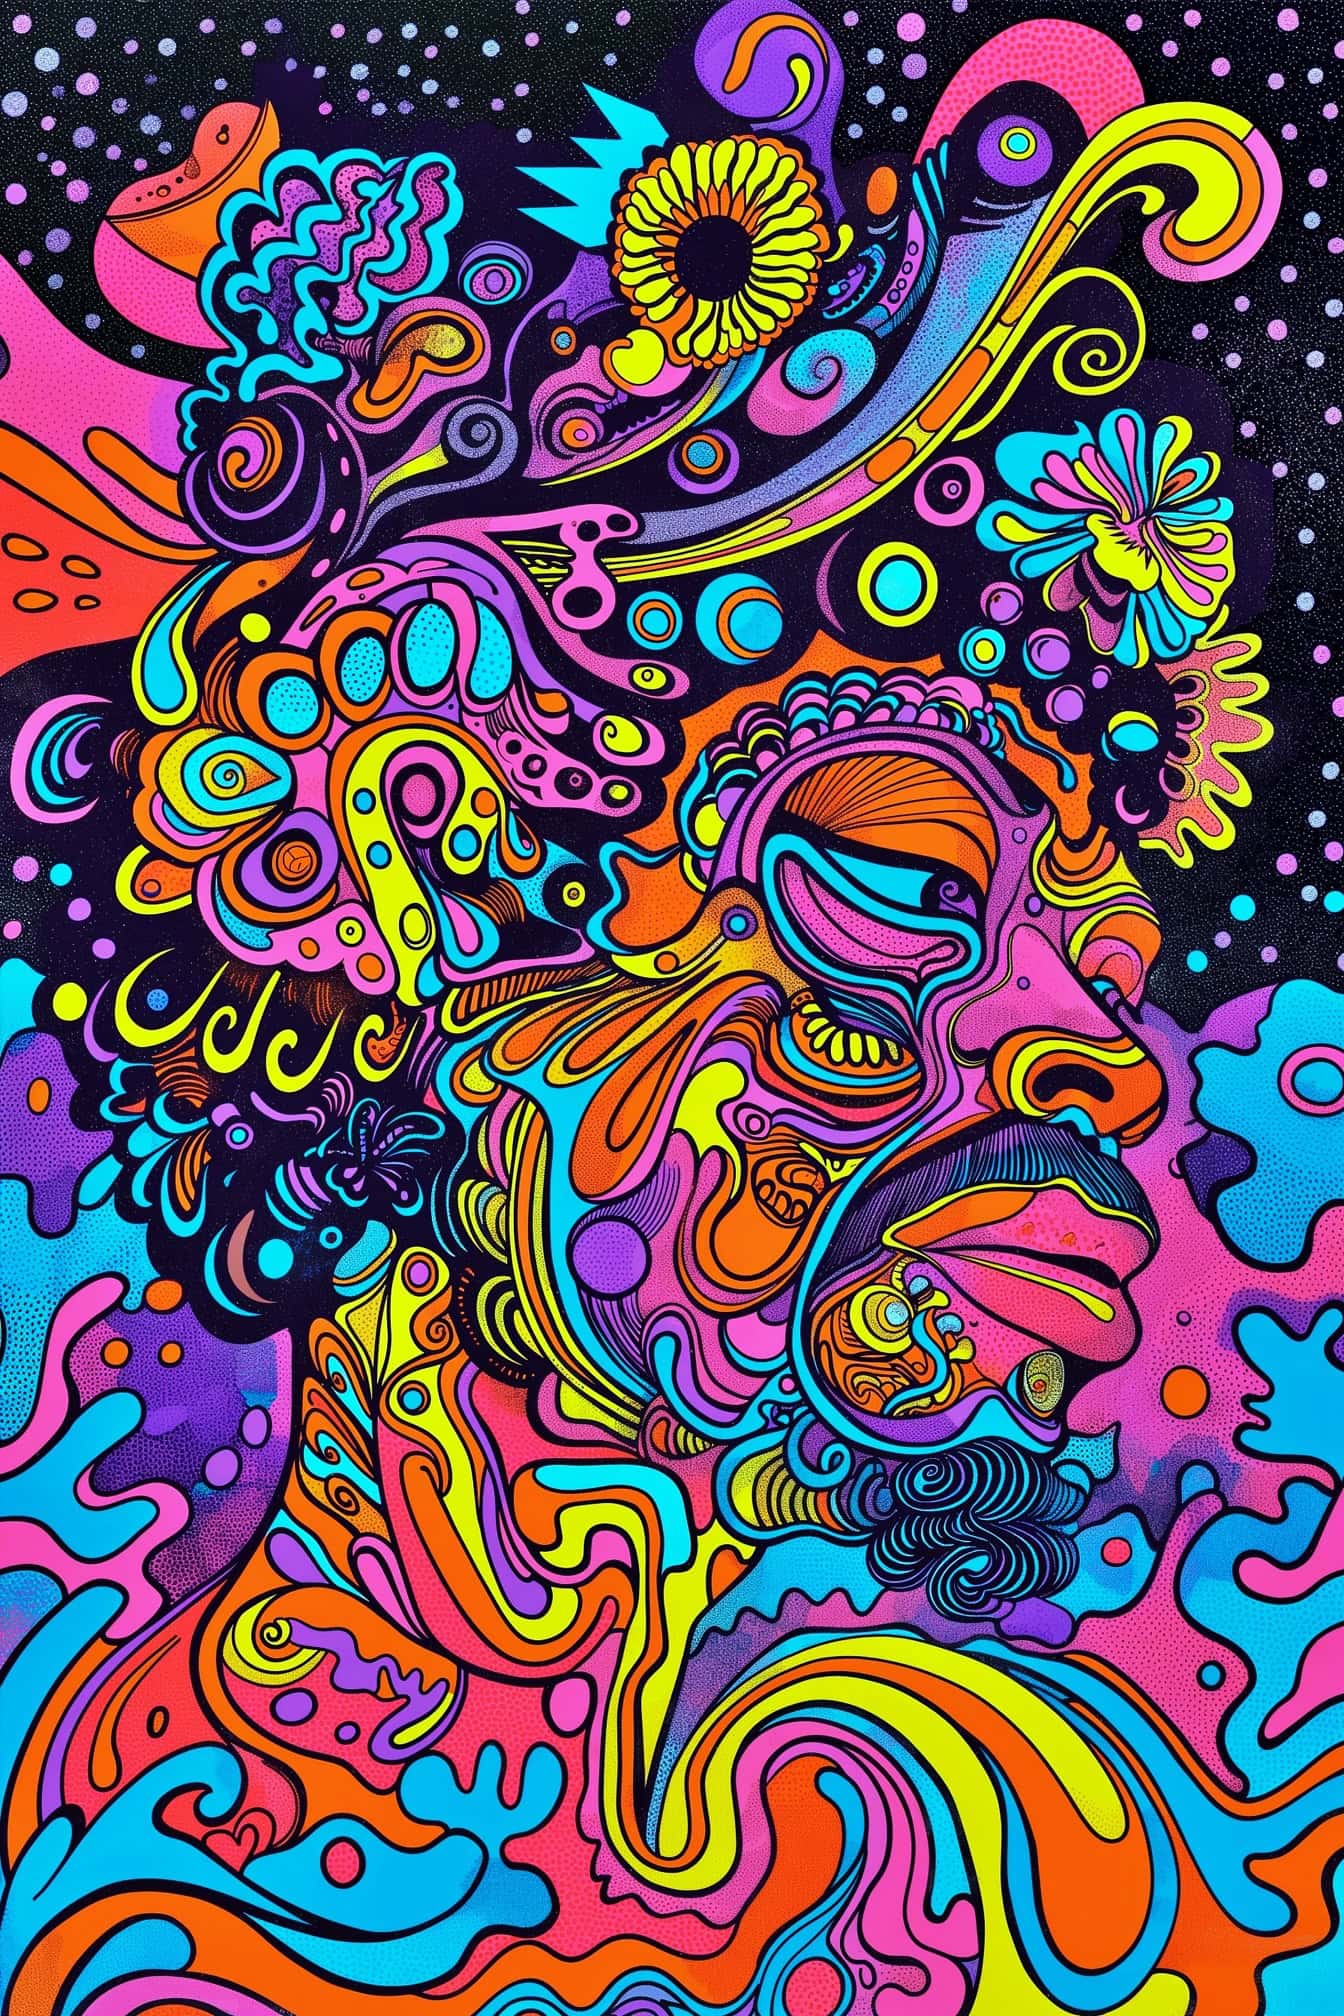 Πολύχρωμο αφηρημένο ψυχεδελικό έργο τέχνης ενός άνδρα σε στυλ pop art